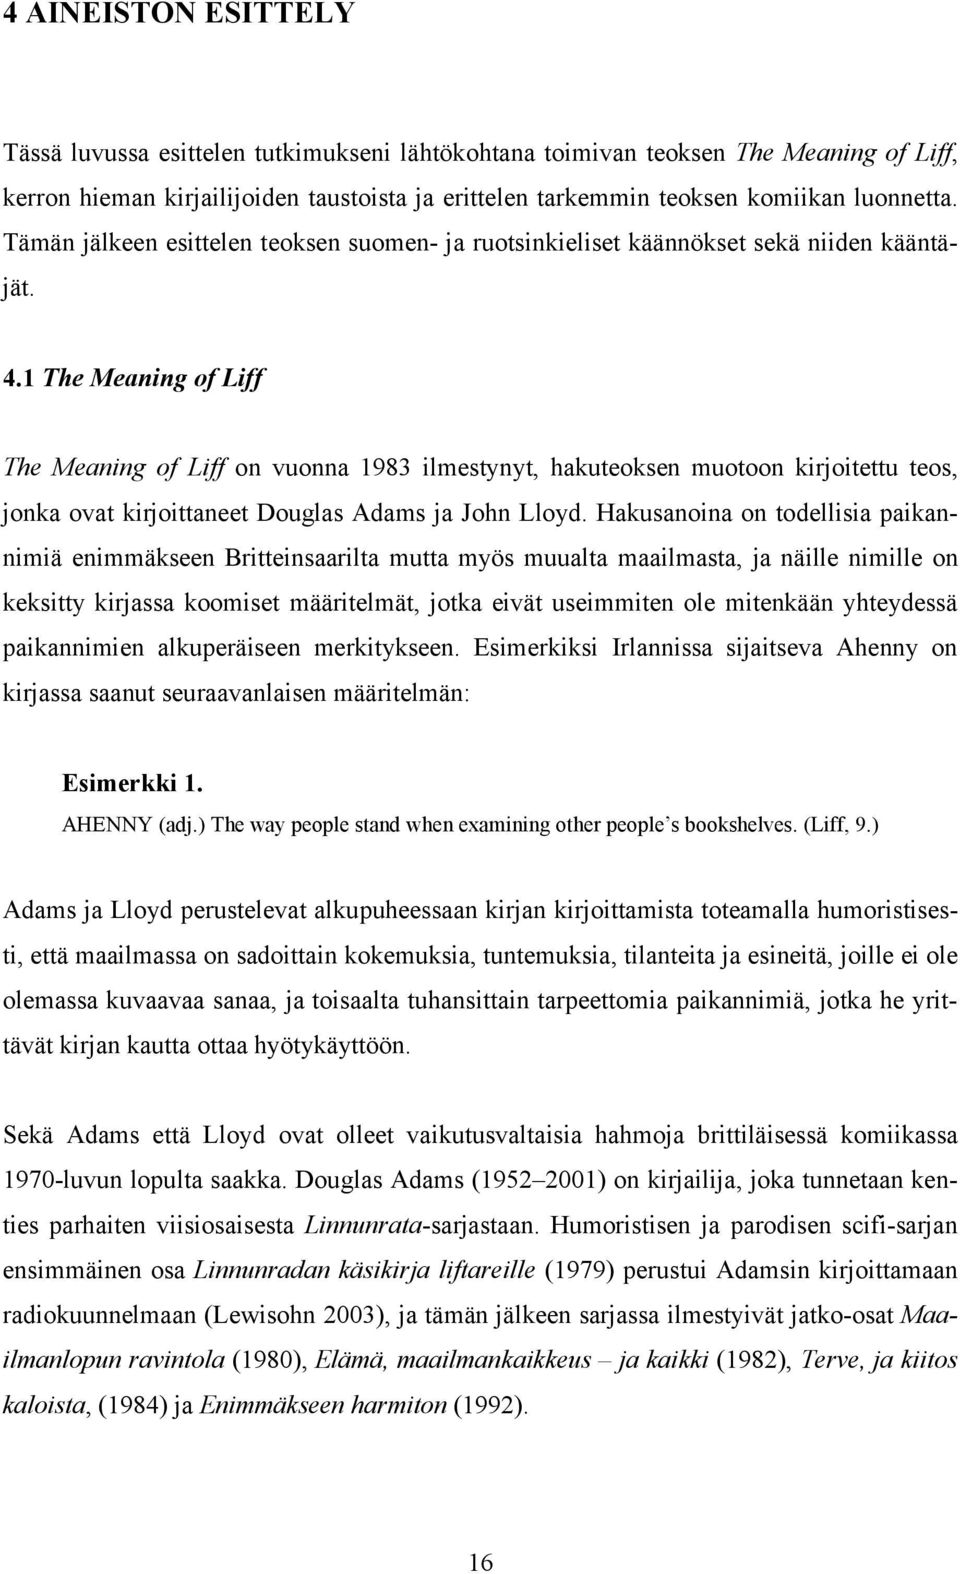 1 The Meaning of Liff The Meaning of Liff on vuonna 1983 ilmestynyt, hakuteoksen muotoon kirjoitettu teos, jonka ovat kirjoittaneet Douglas Adams ja John Lloyd.